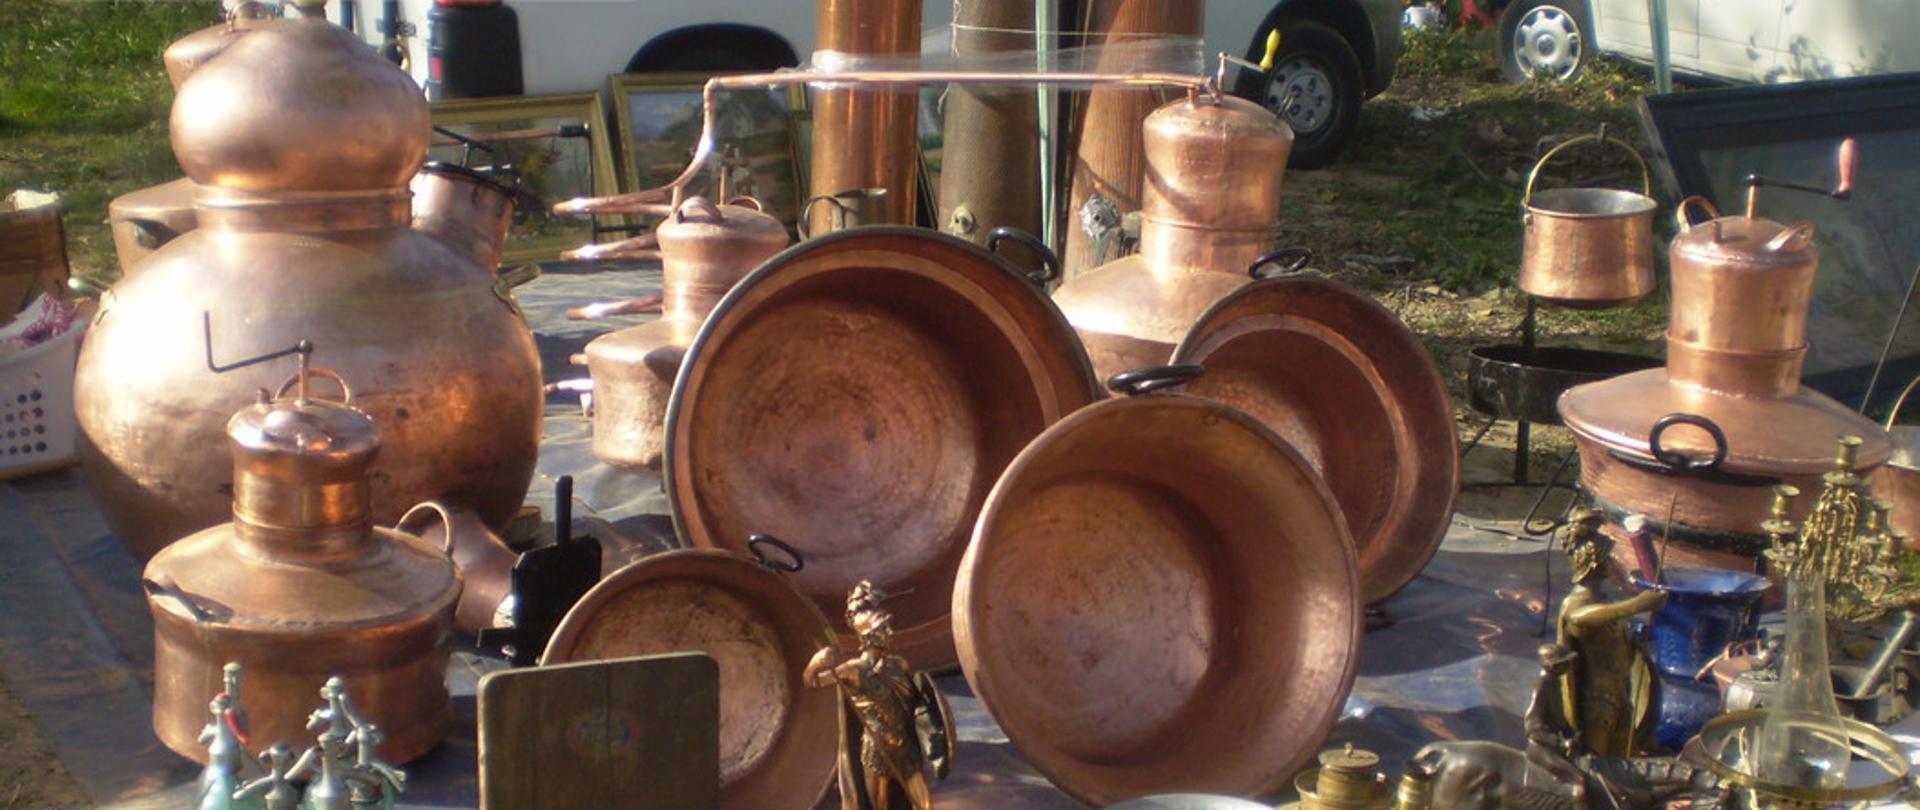 Zdjęcie przedstawia wyroby romskie - naczynia miedziane, kotły , butelki syfonów, figurki. Na pierwszym planie duża waga